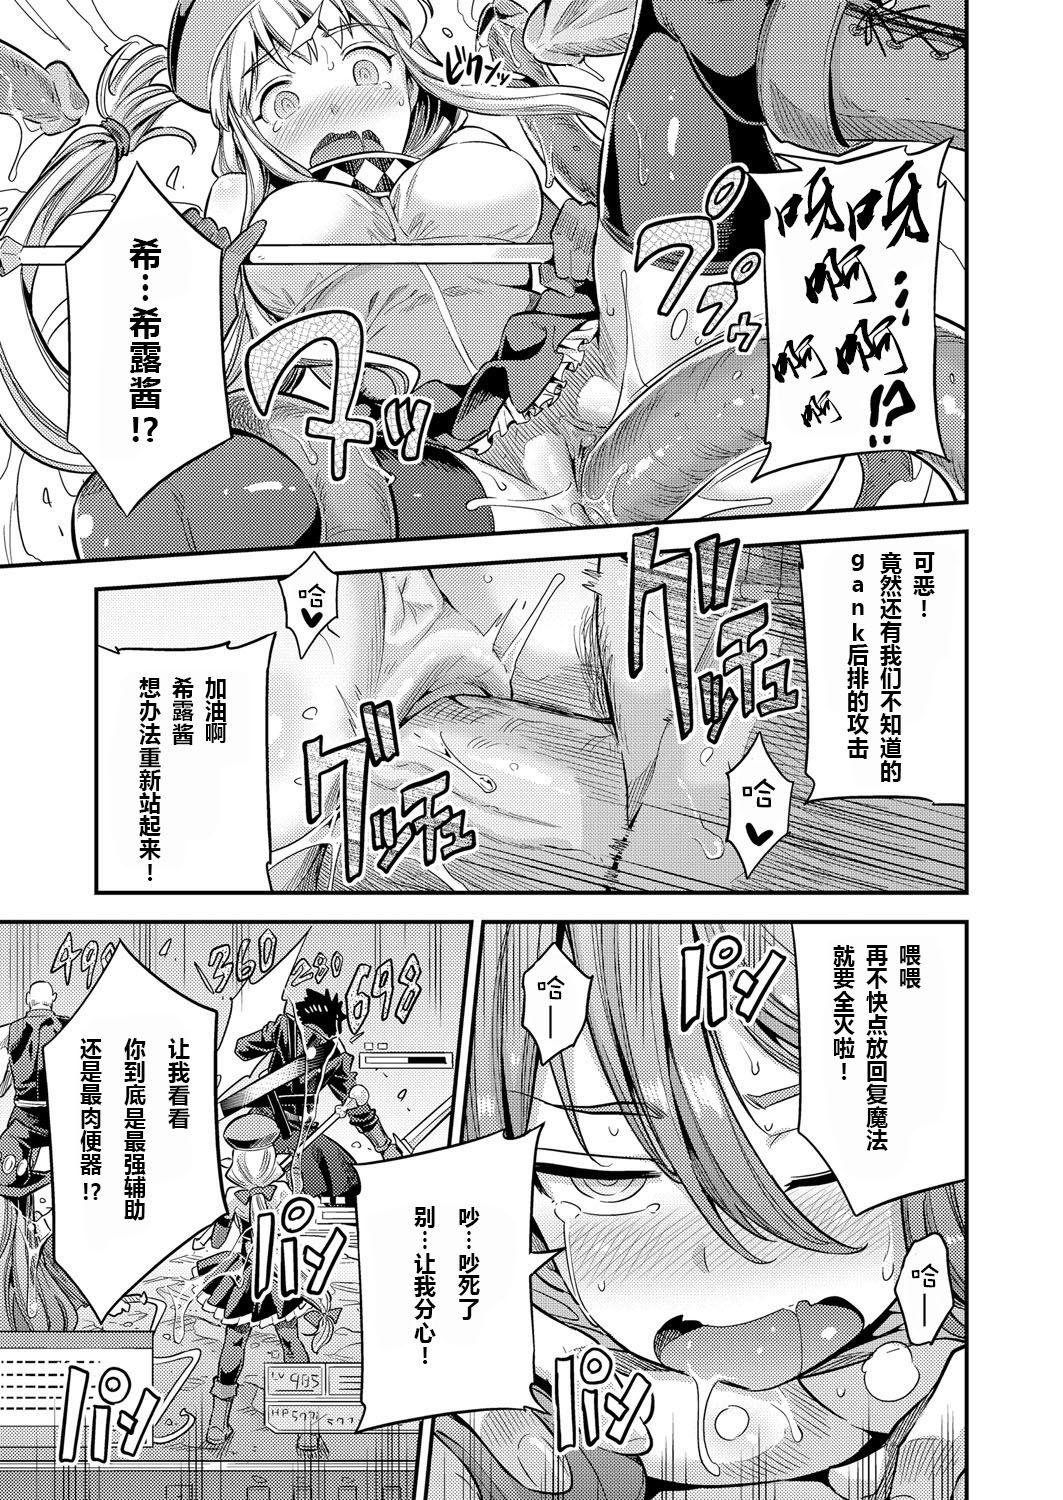 Masseur Watashi ga Ittara Mina Shinjau Netoge Haijin wa Tanetsuke Rape saretemo Te ga Hanasenain desu Rub - Page 11